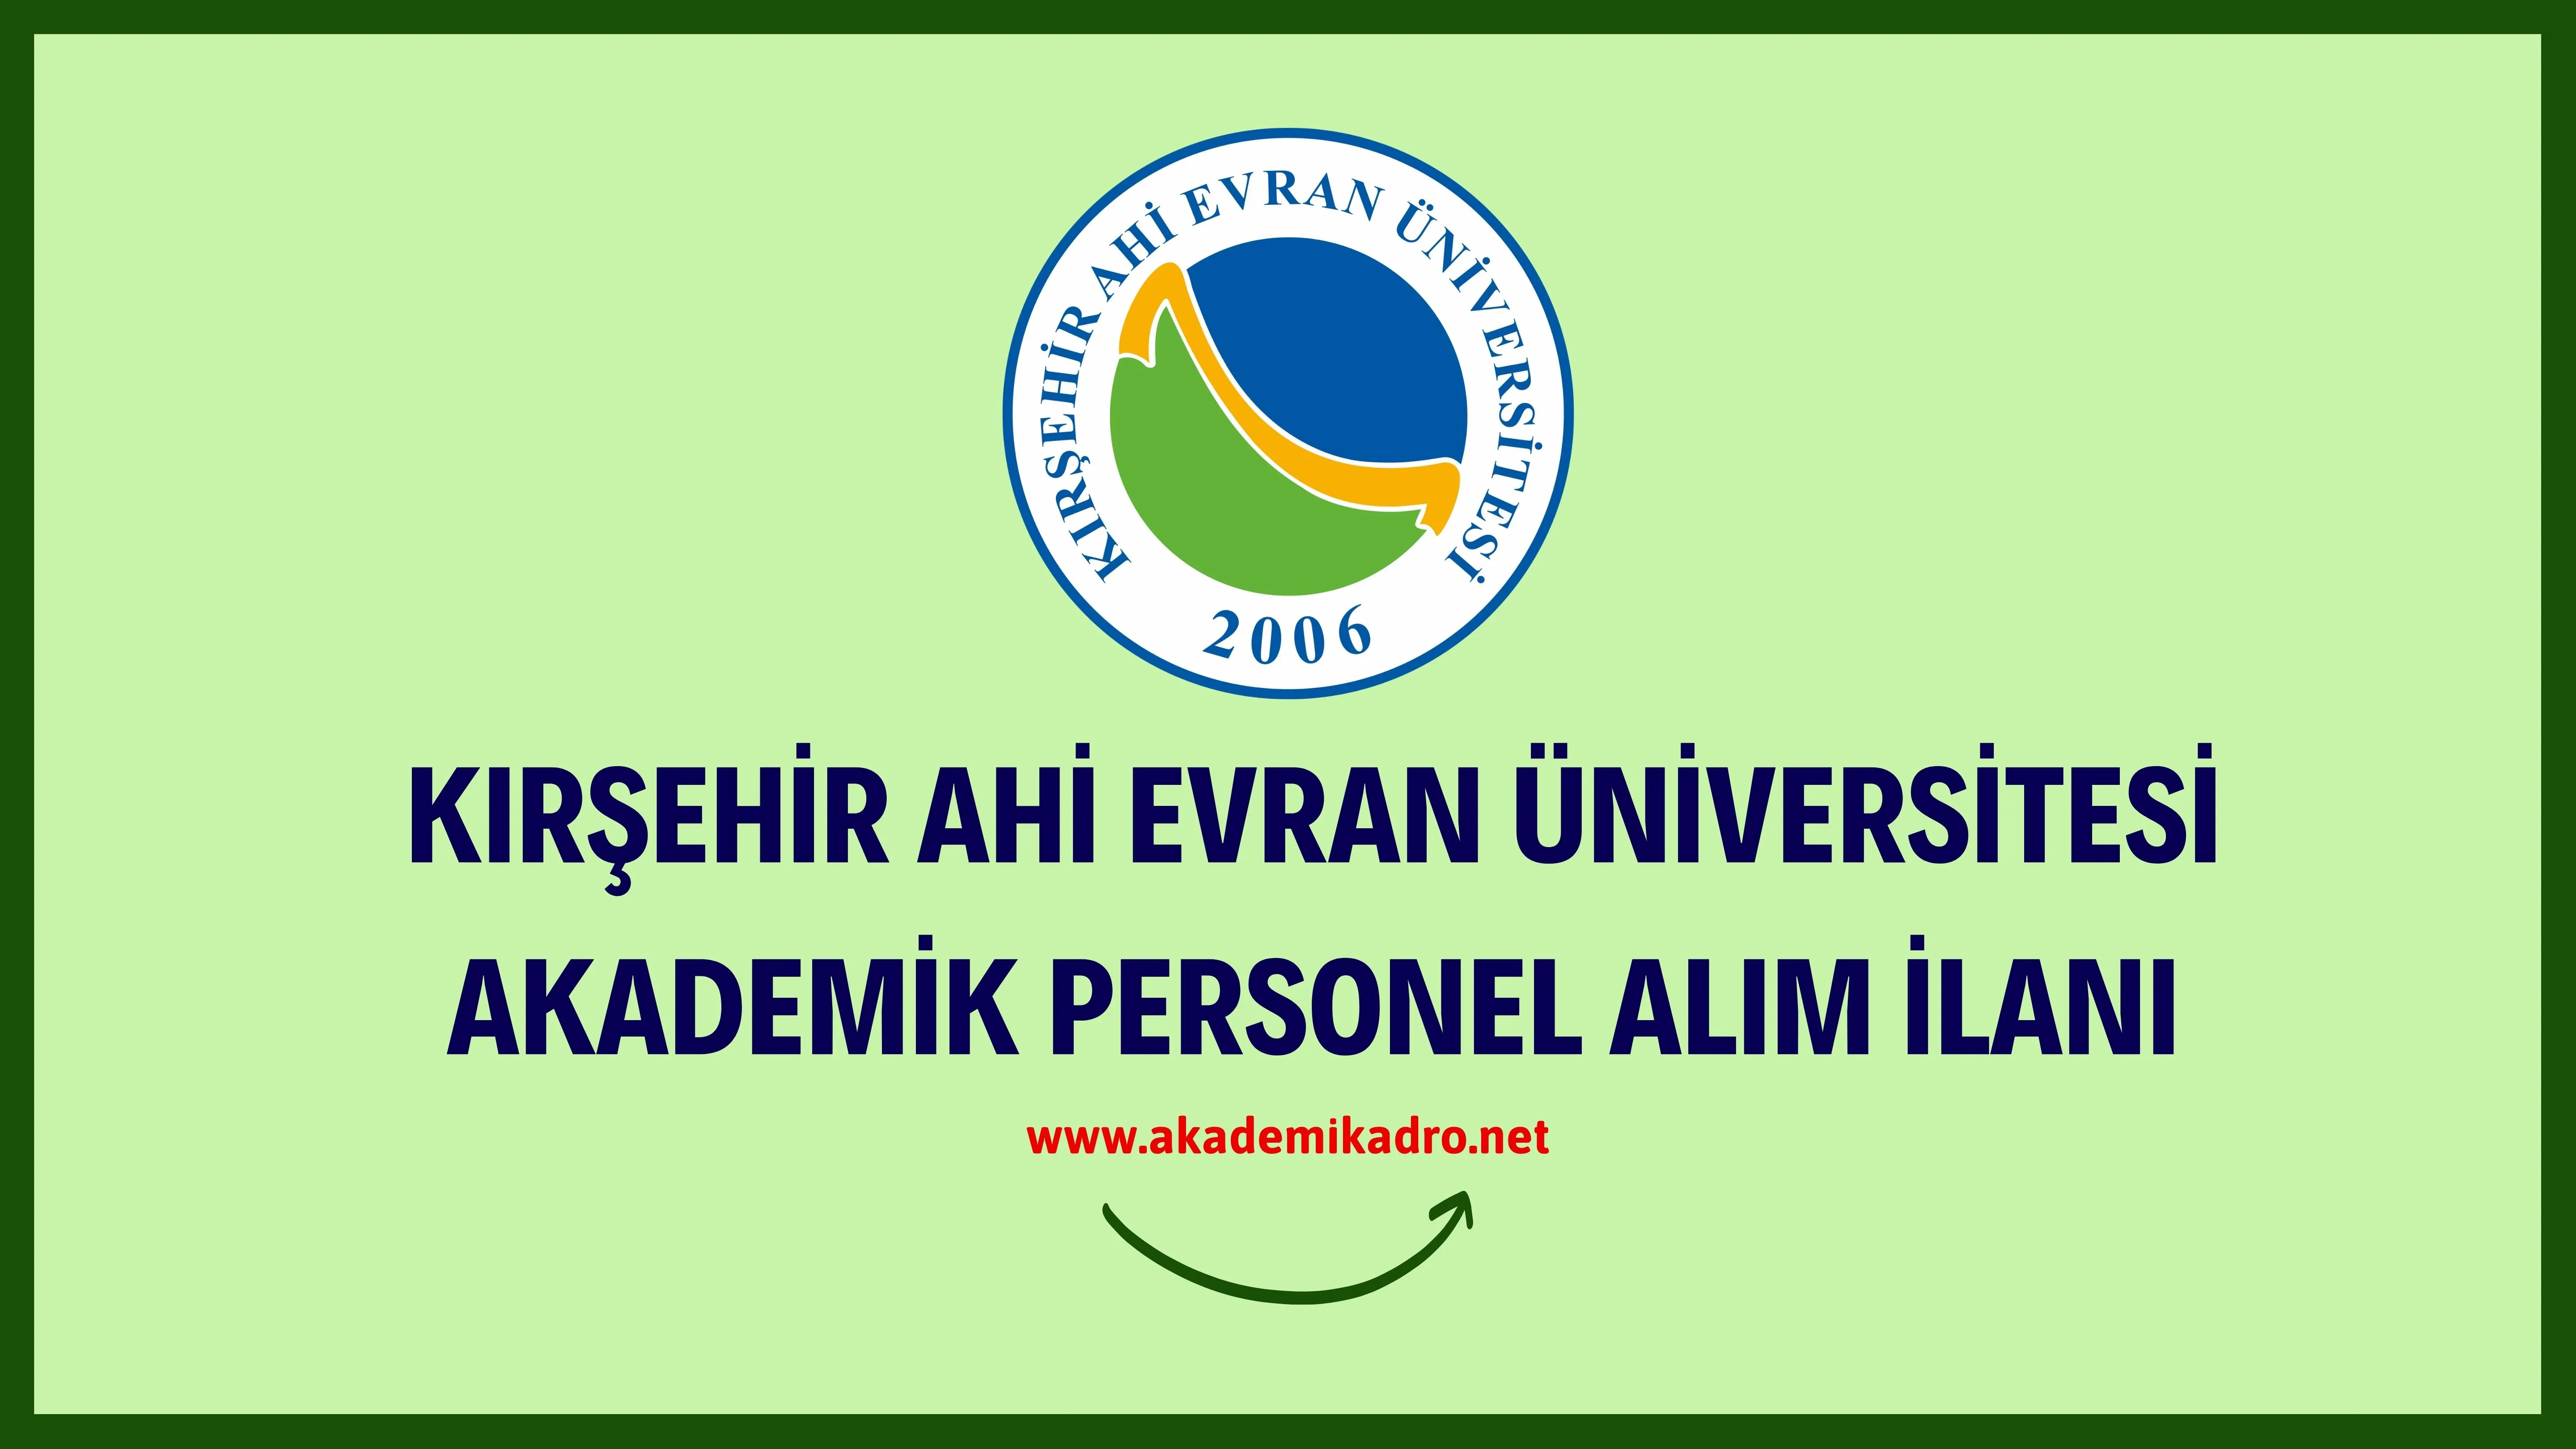 Kırşehir Ahi Evran Üniversitesi birçok alandan 34 Öğretim üyesi alacak.